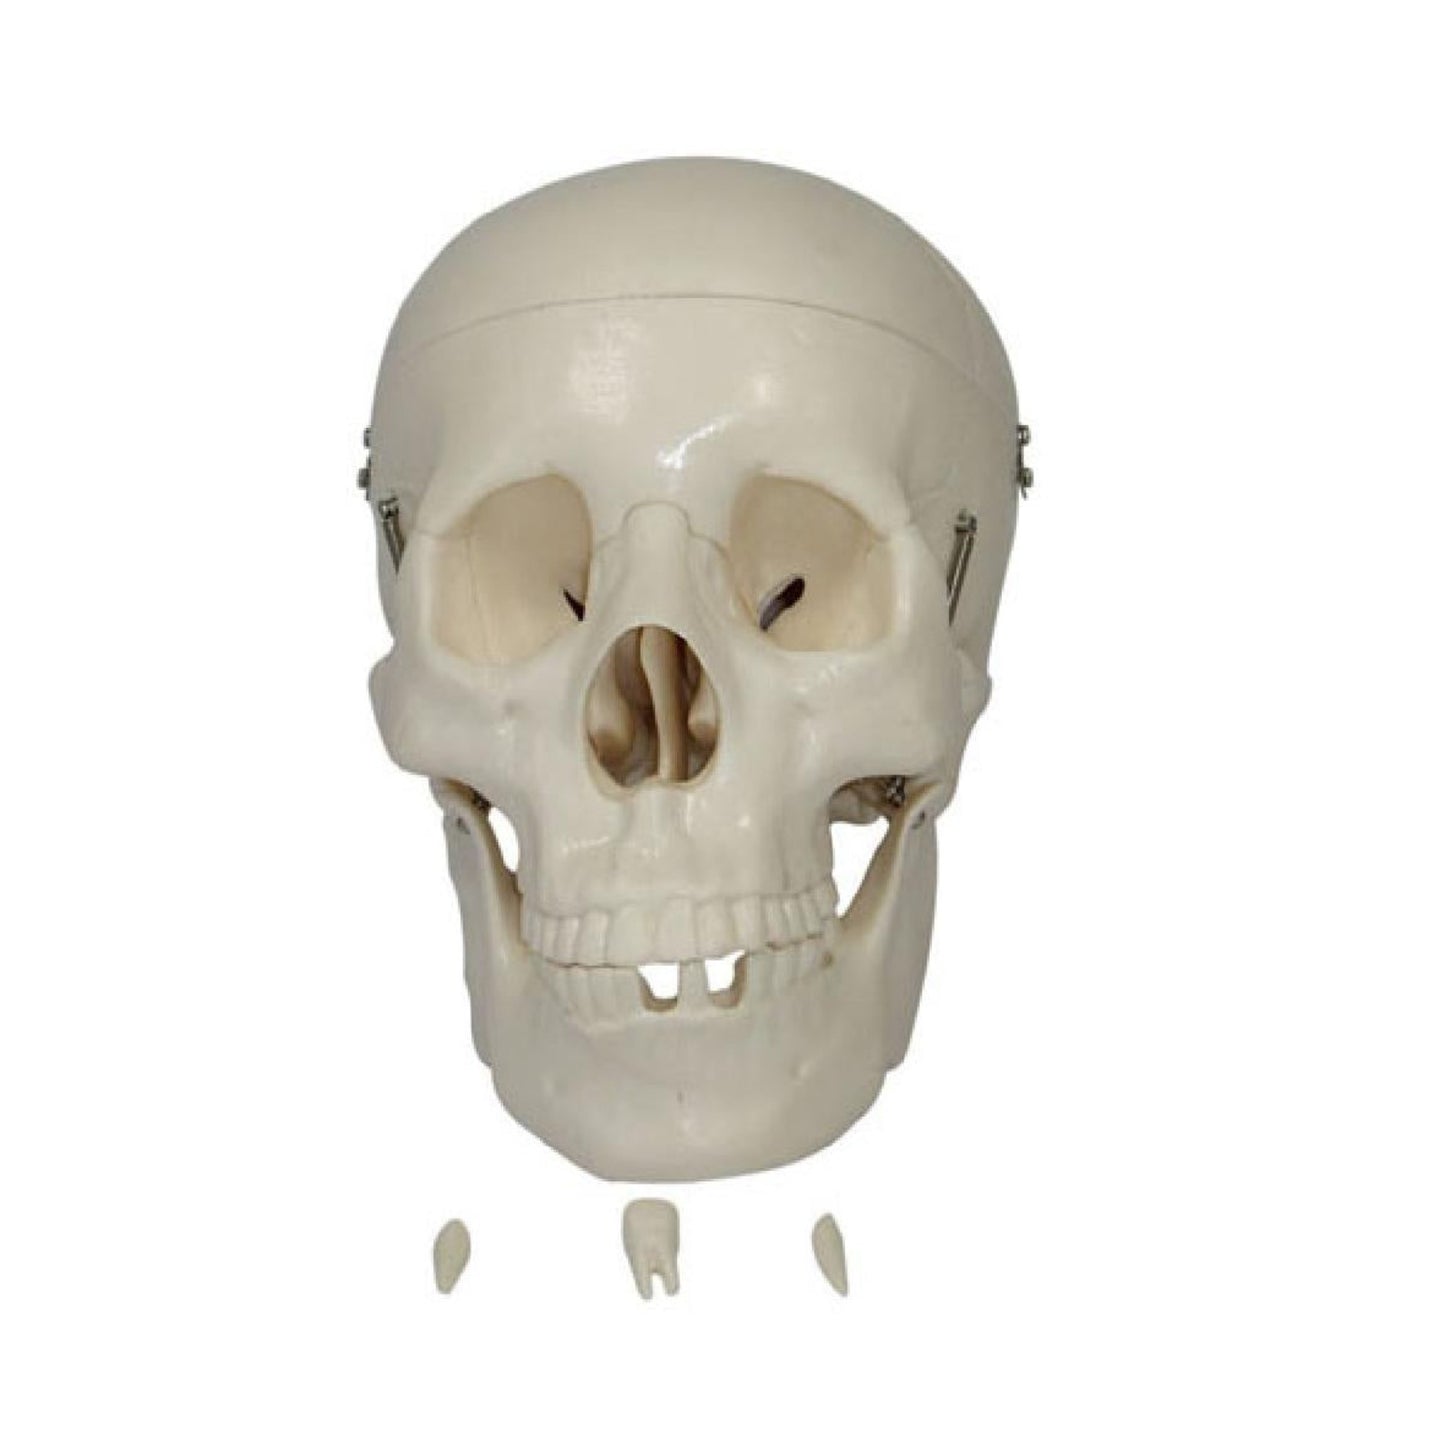 Modelo de cráneo humano de tamaño natural diseccionado en 3 partes 